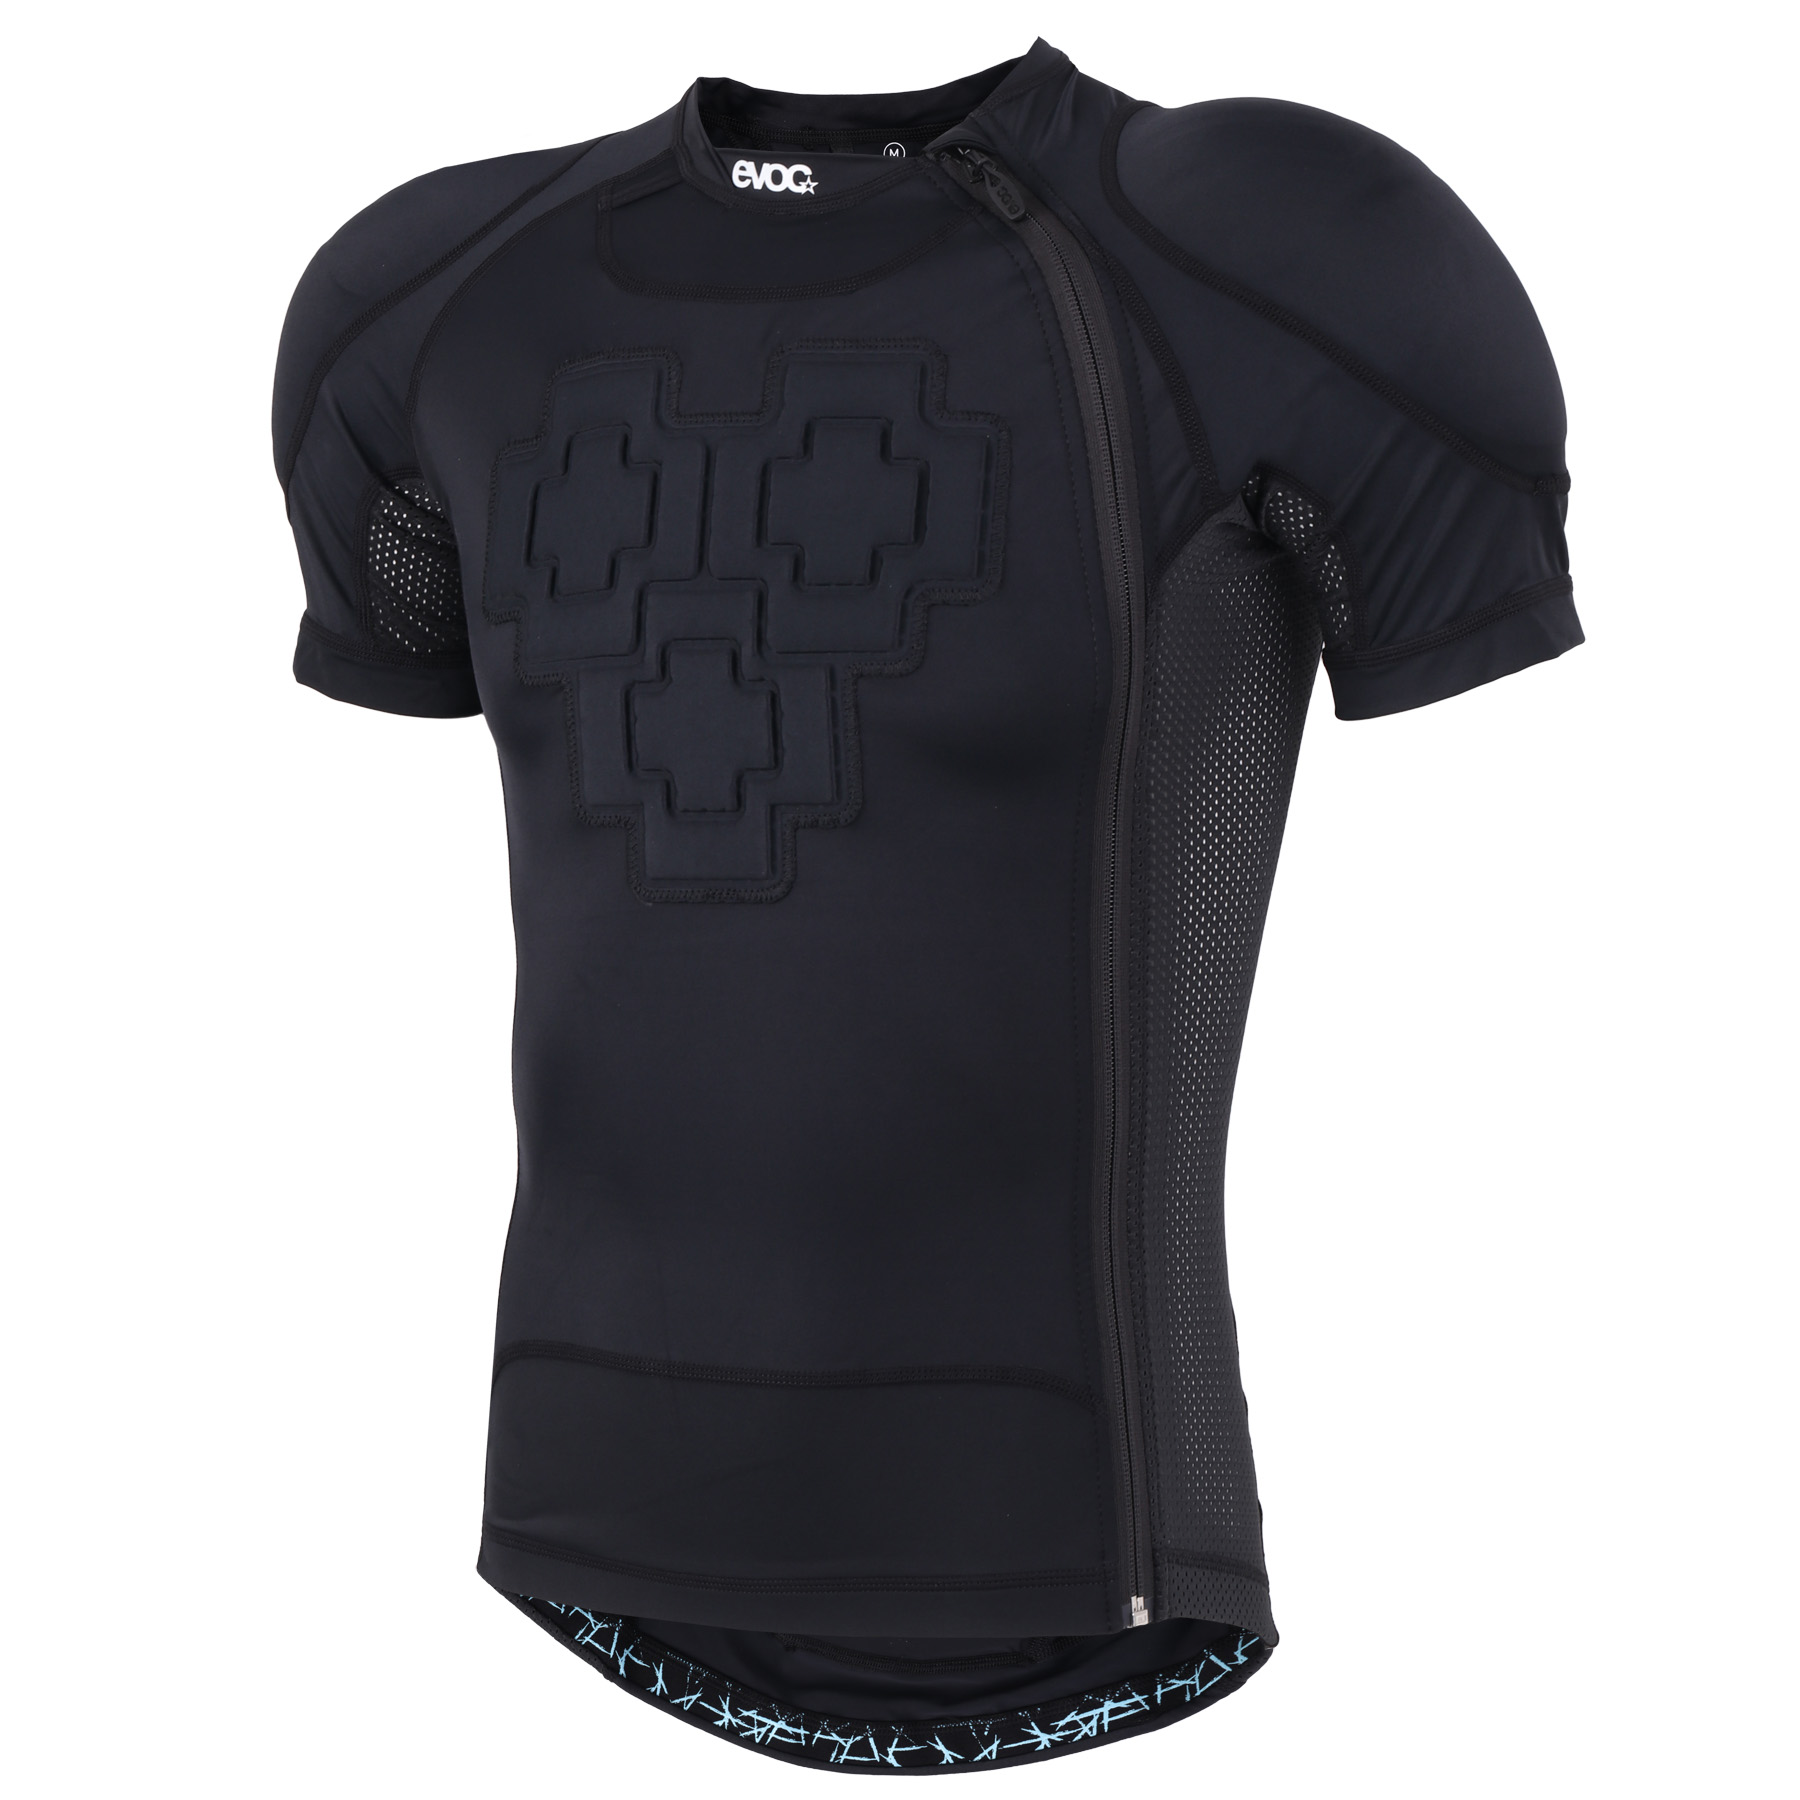 Produktbild von EVOC Protector Shirt Zip Protektorenshirt - Schwarz